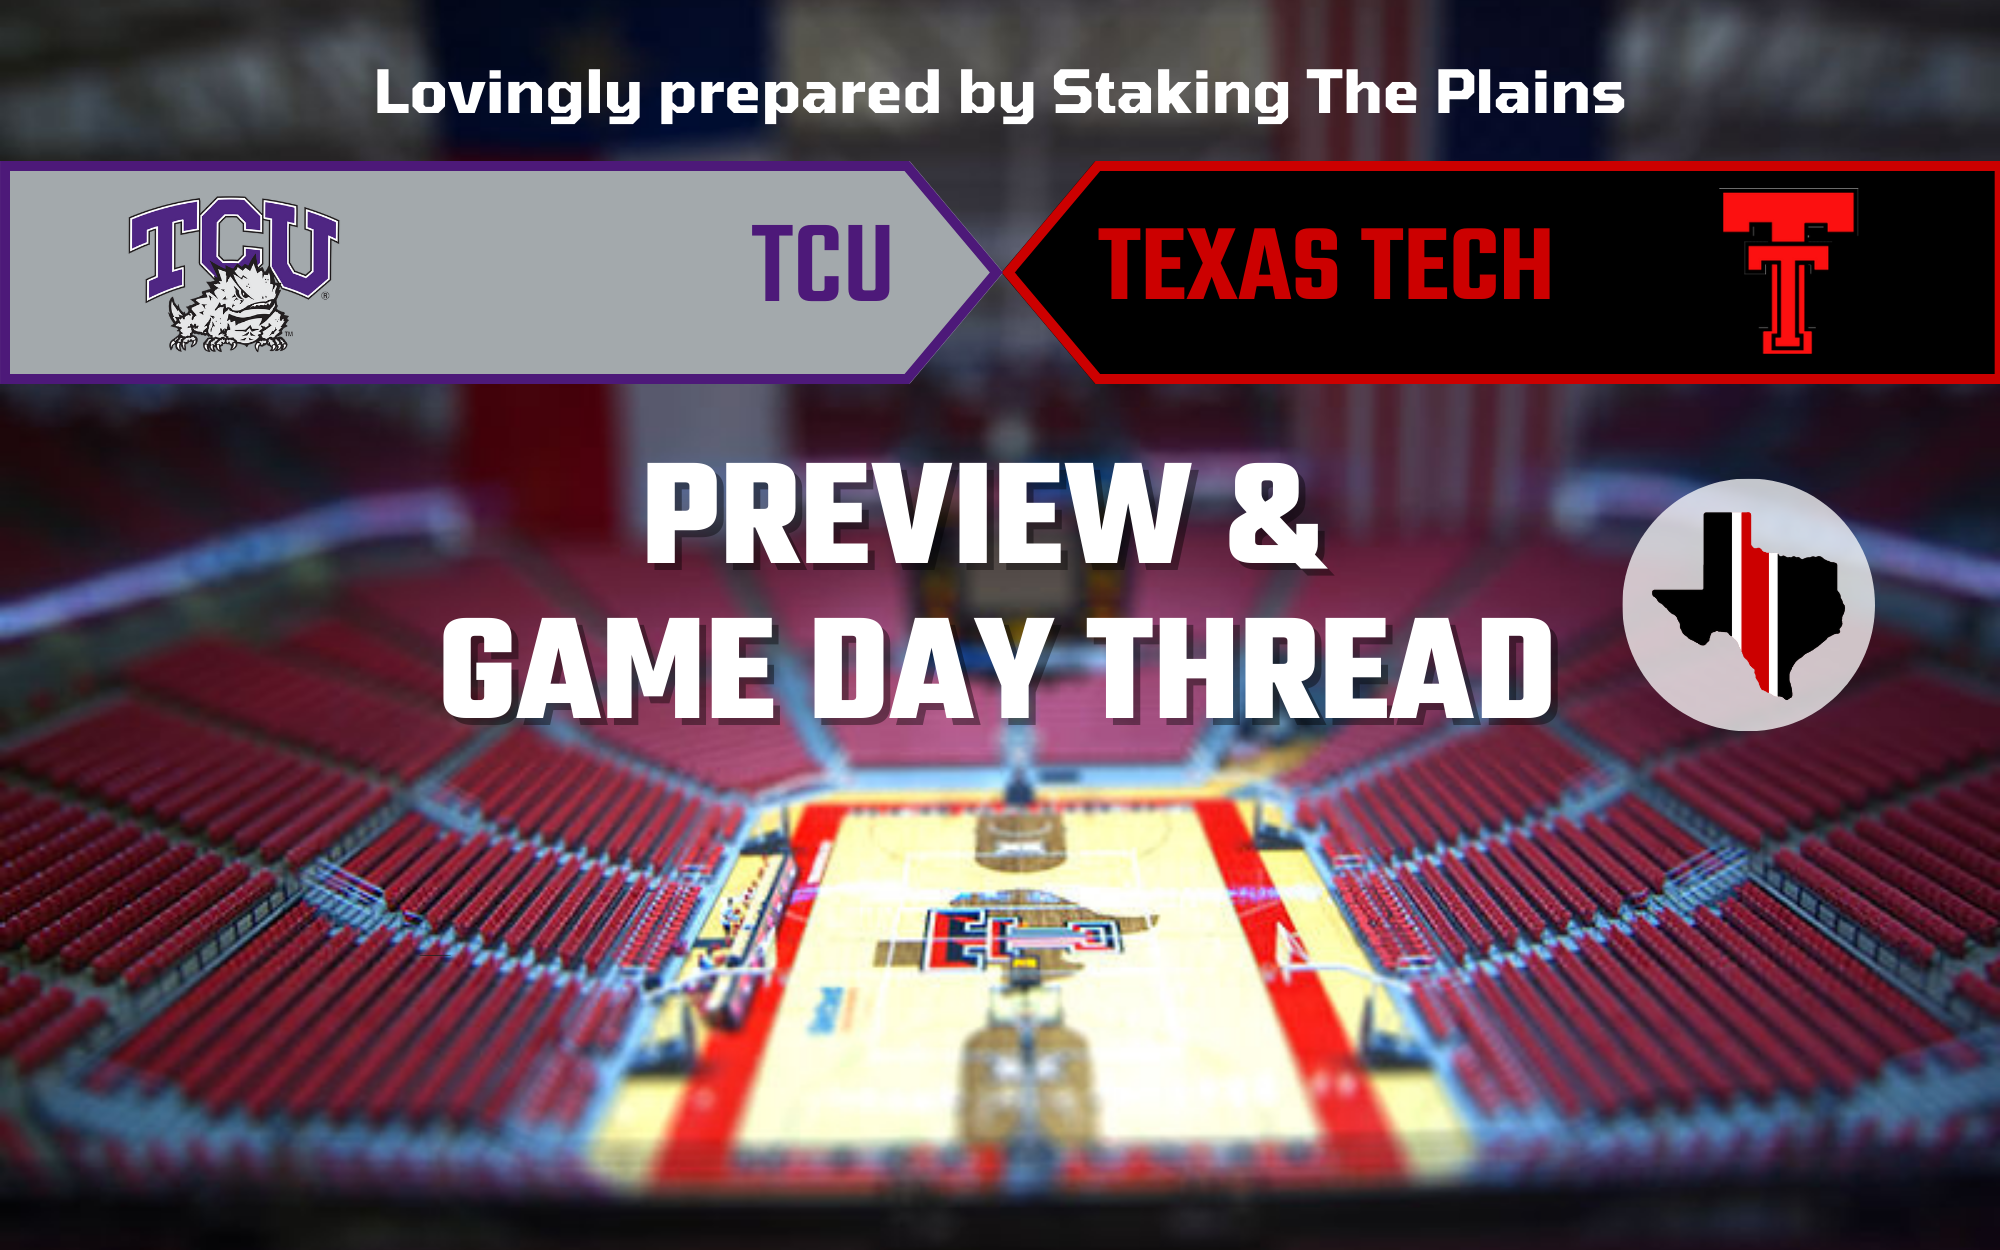 Preview & Game Day Thread: TCU vs. Texas Tech